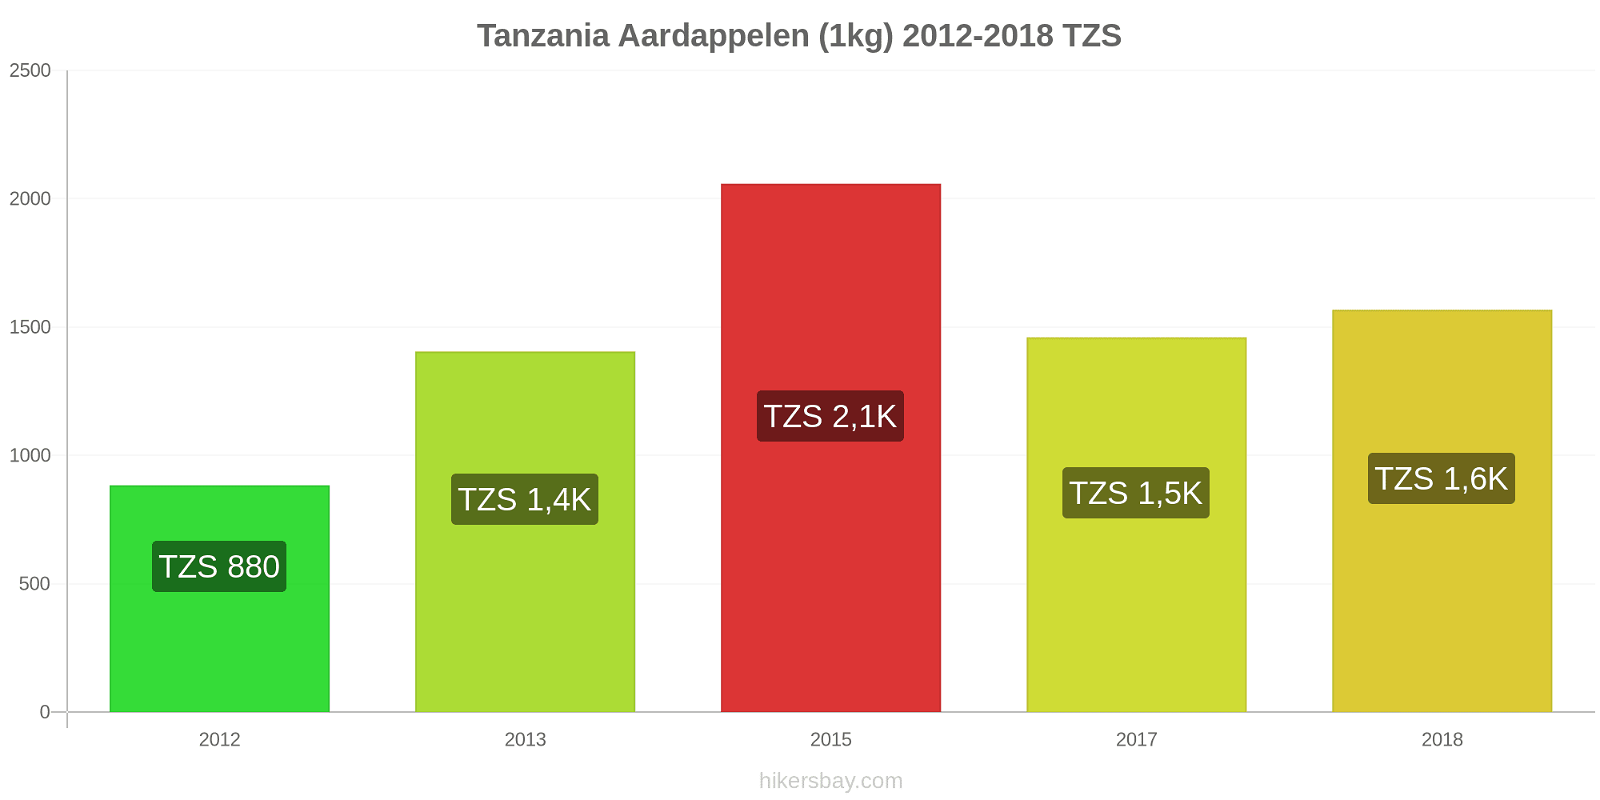 Tanzania prijswijzigingen Aardappelen (1kg) hikersbay.com